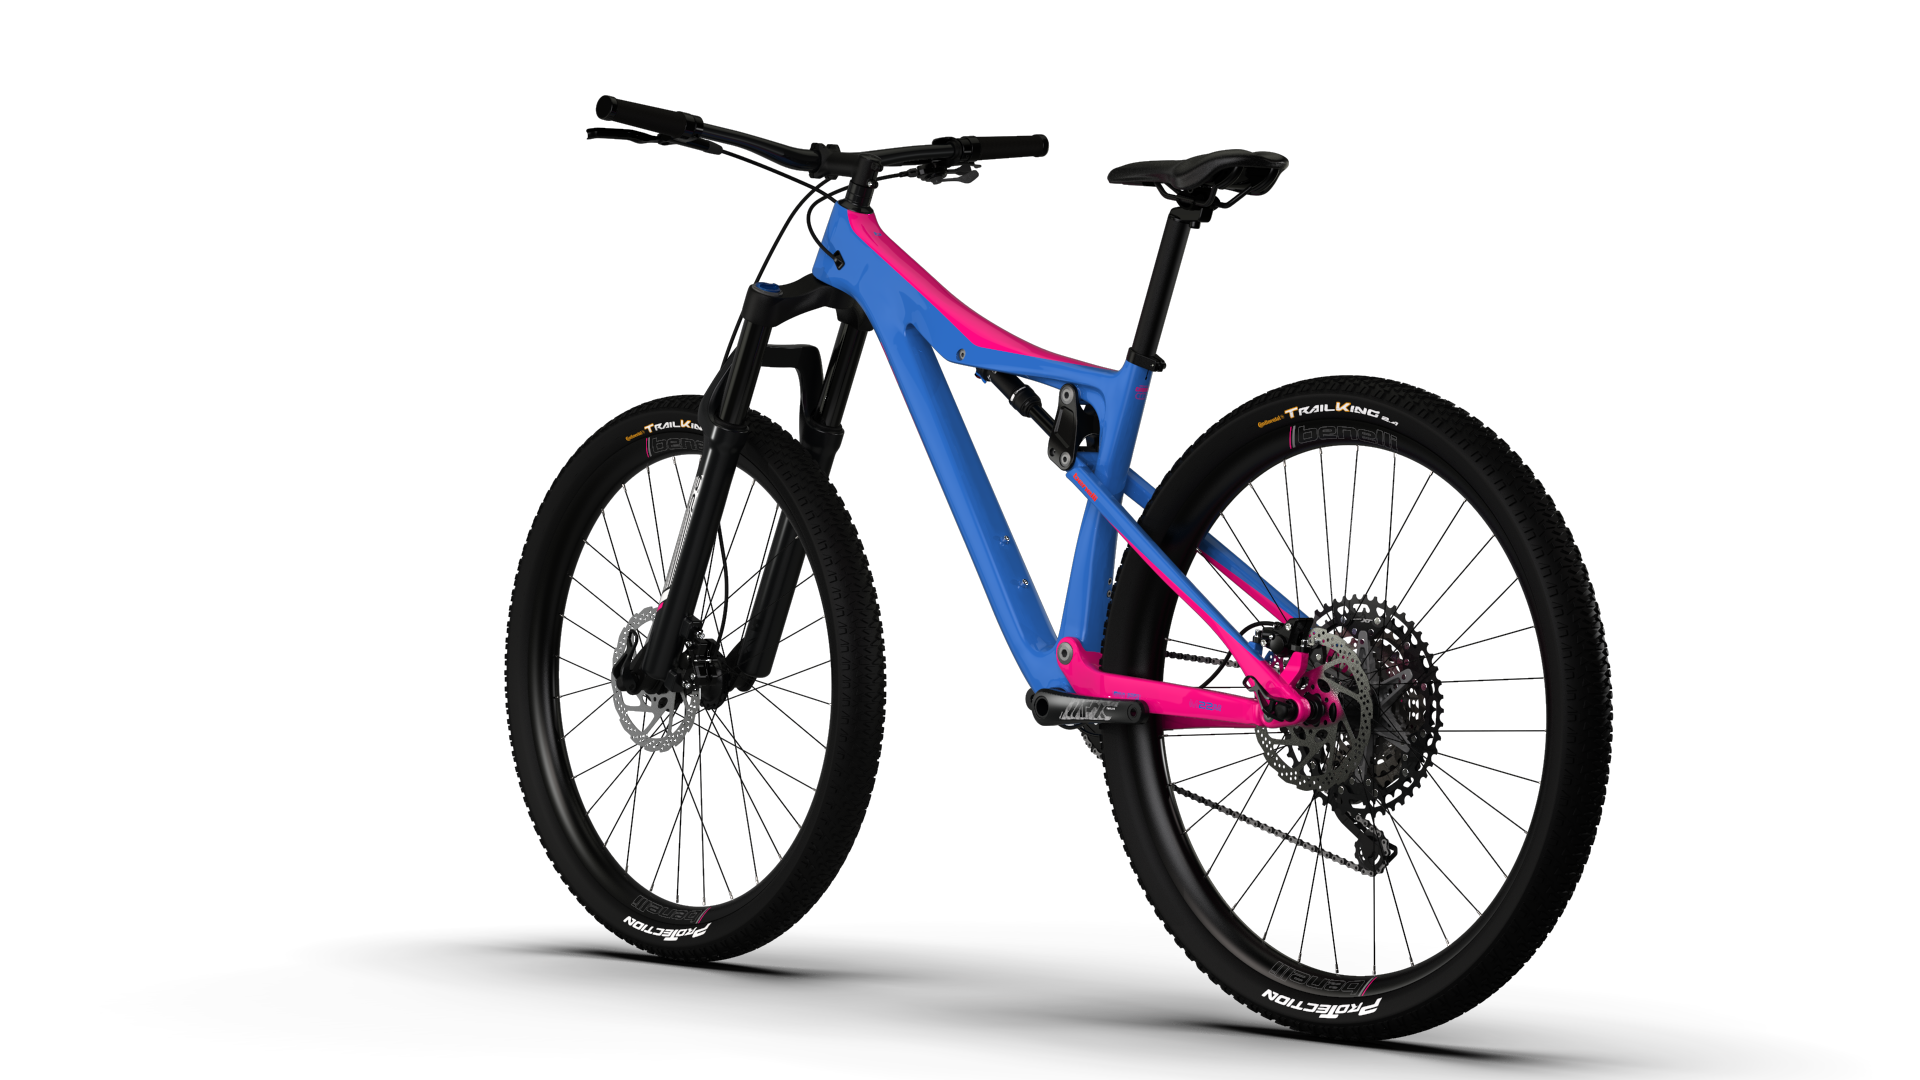 Bicicleta Mtb Benelli Talla M 29&Quot; Carb. (M22 3.0 Pro Carb 29 Fs)color Azul /Rosado